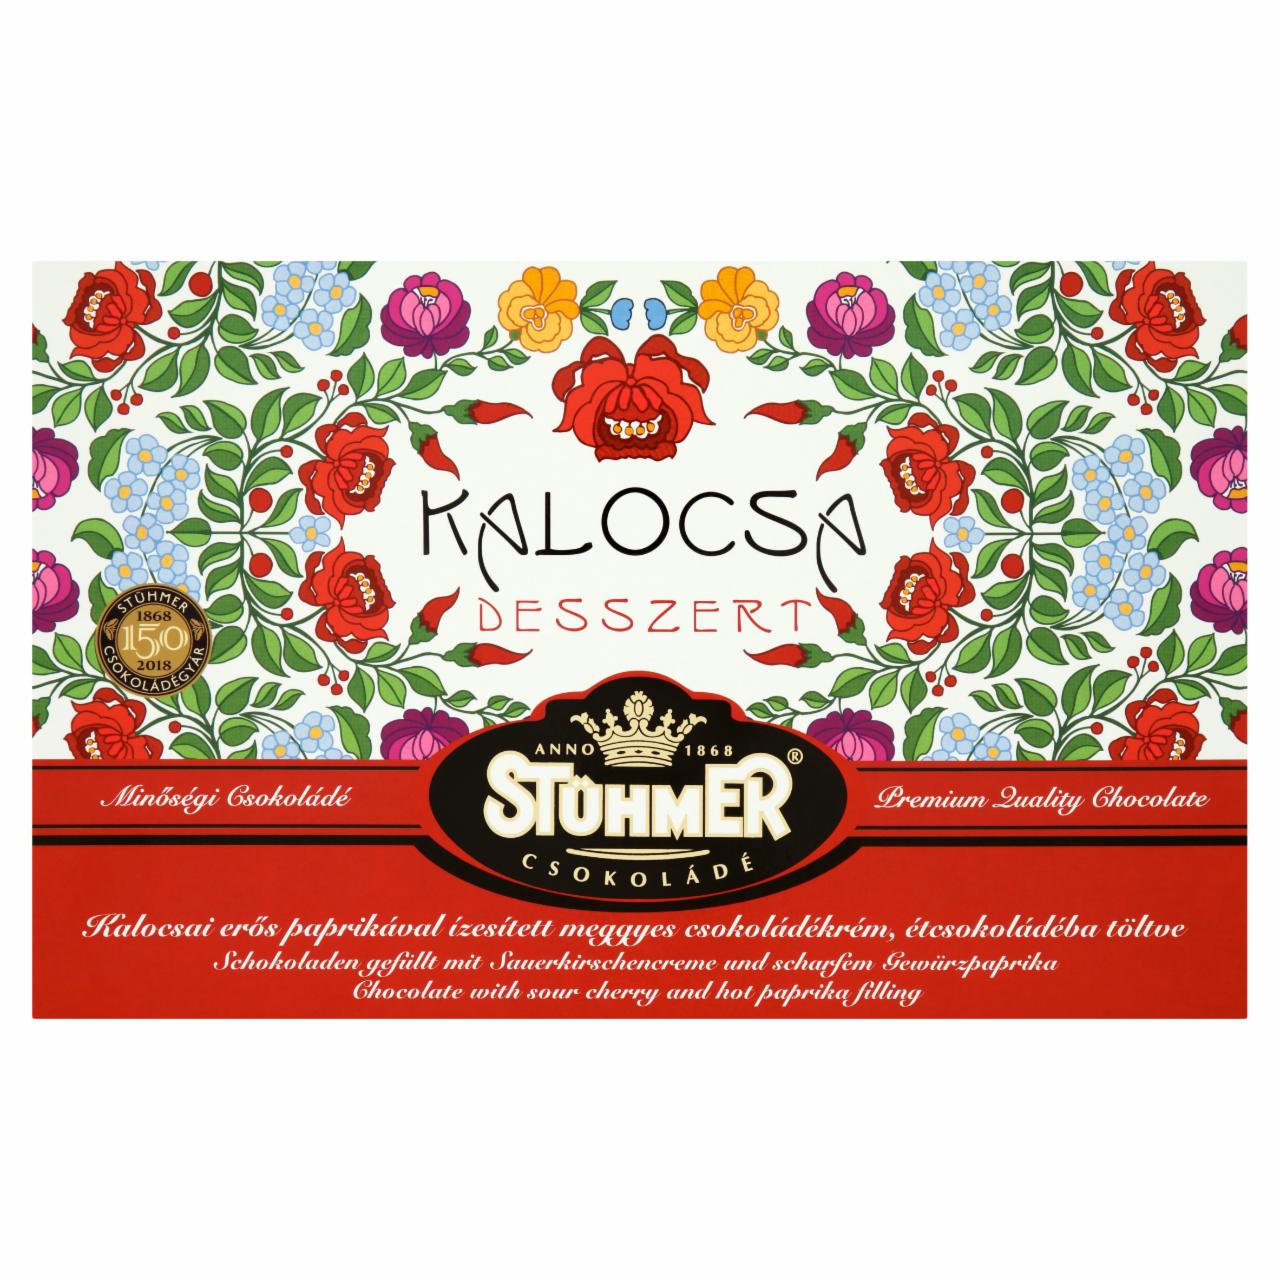 Képek - Stühmer Kalocsa Desszert étcsokoládé erős paprikával ízesített meggyes csokoládékrémmel töltve 120 g